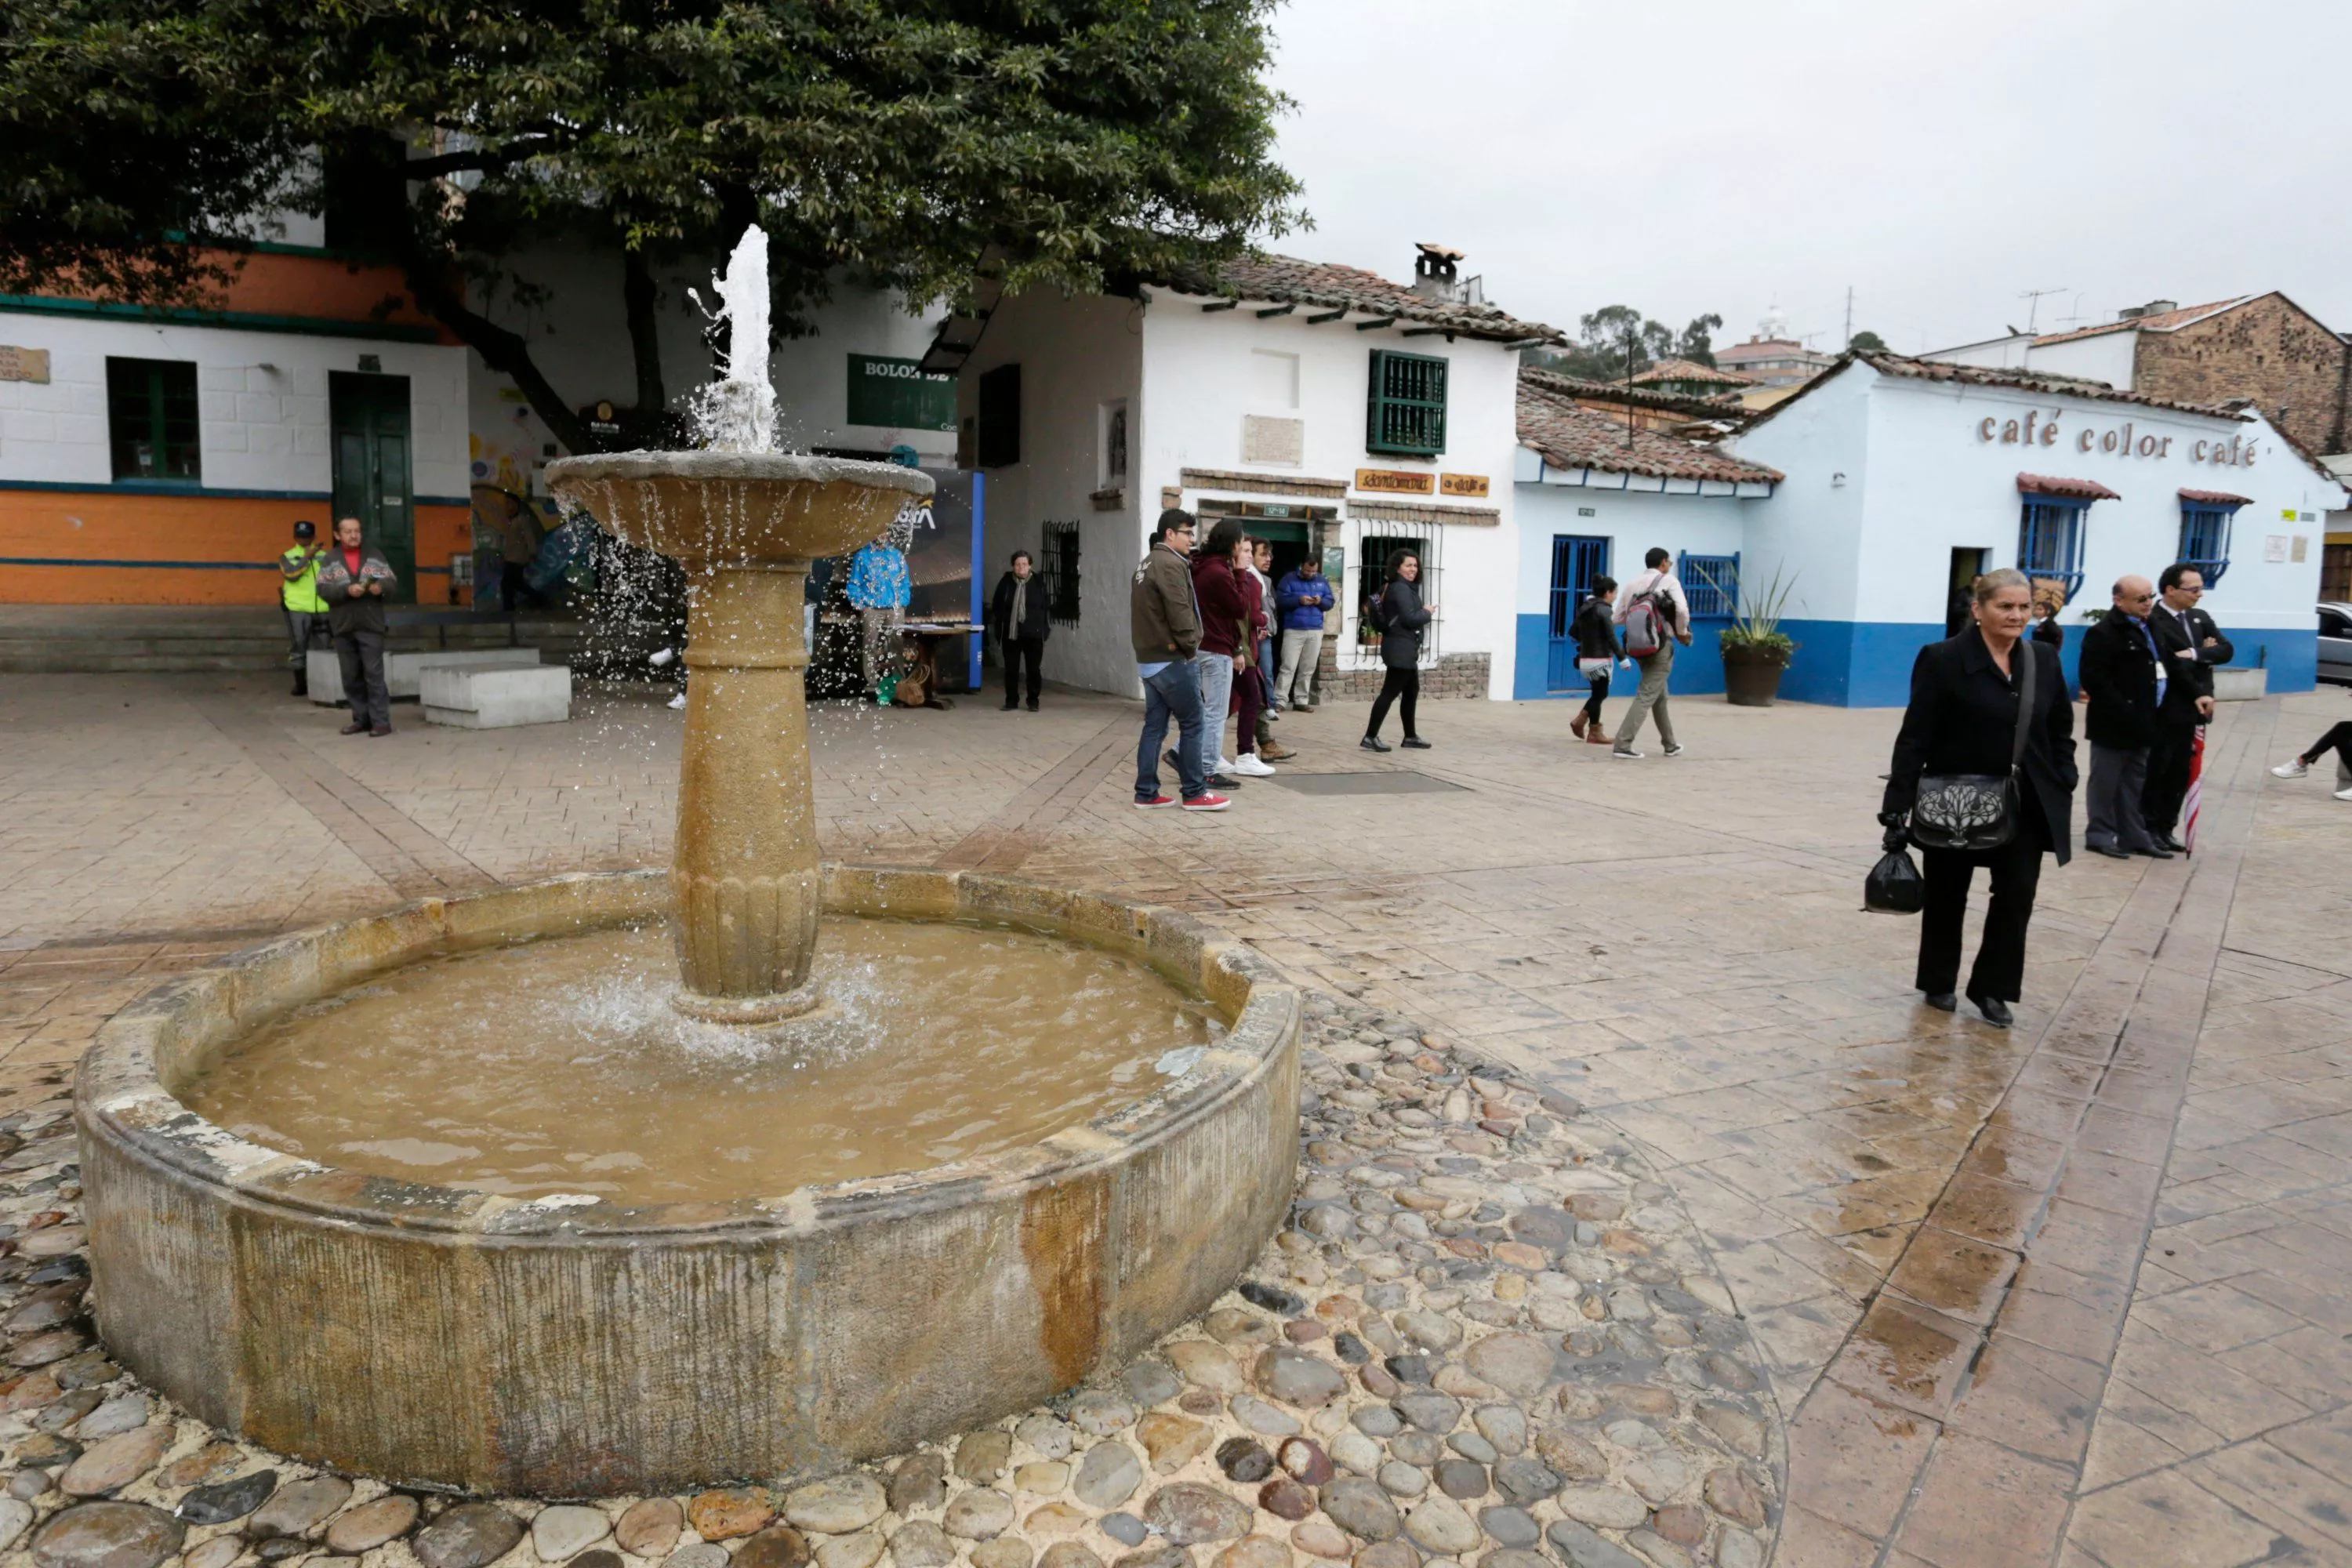 Chorro de Quevedo Square in Colombia, South America | Architecture - Rated 4.1